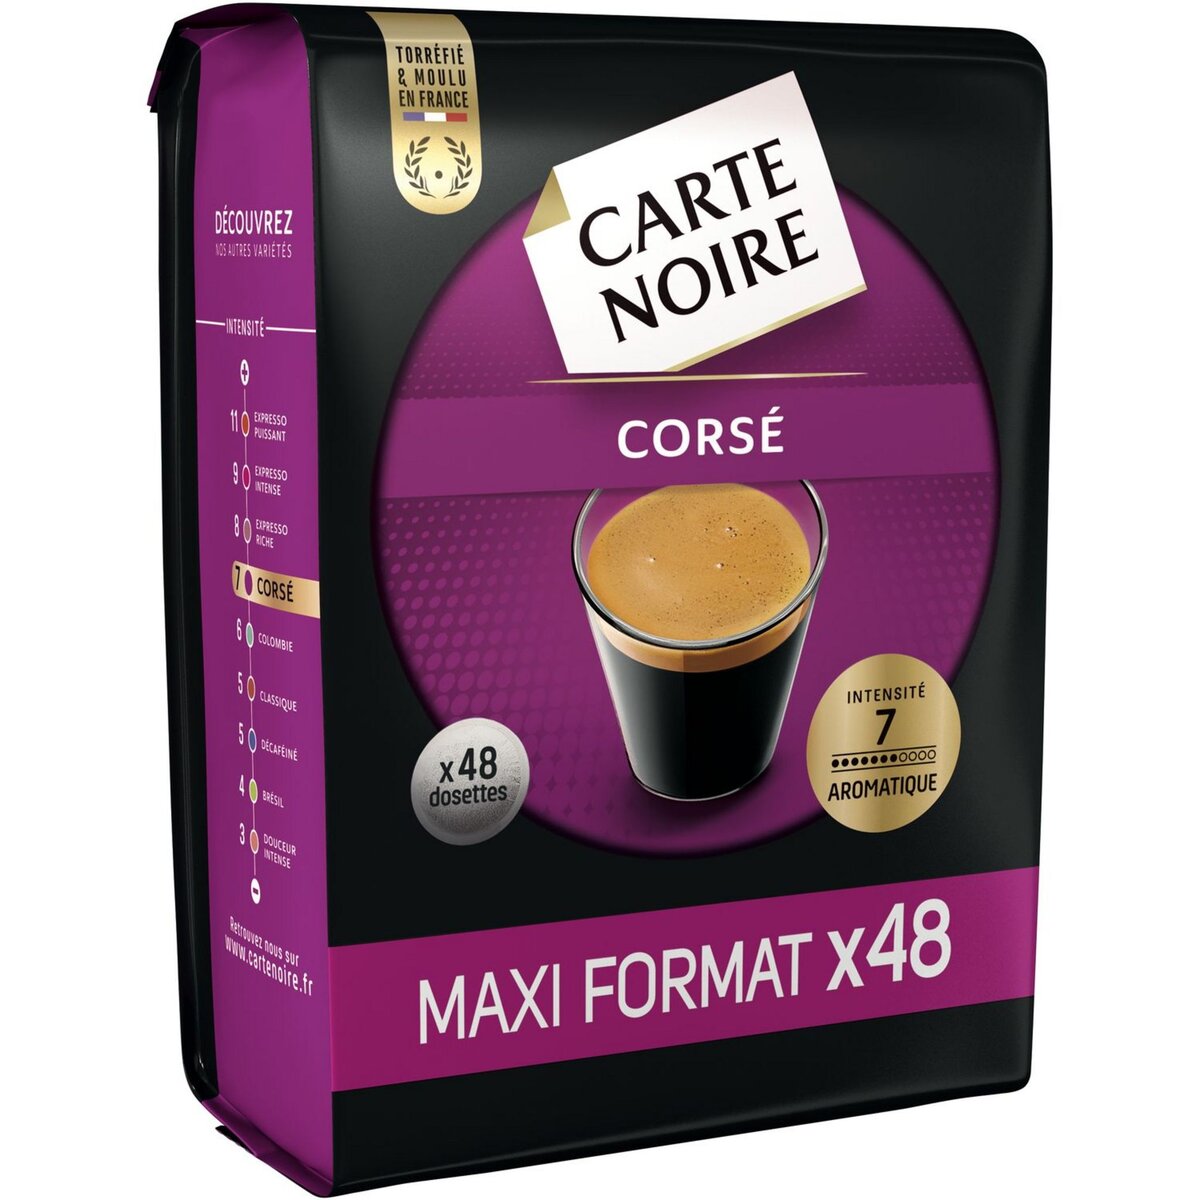 CARTE NOIRE Dosette intensité 7 maxi format x48 336g